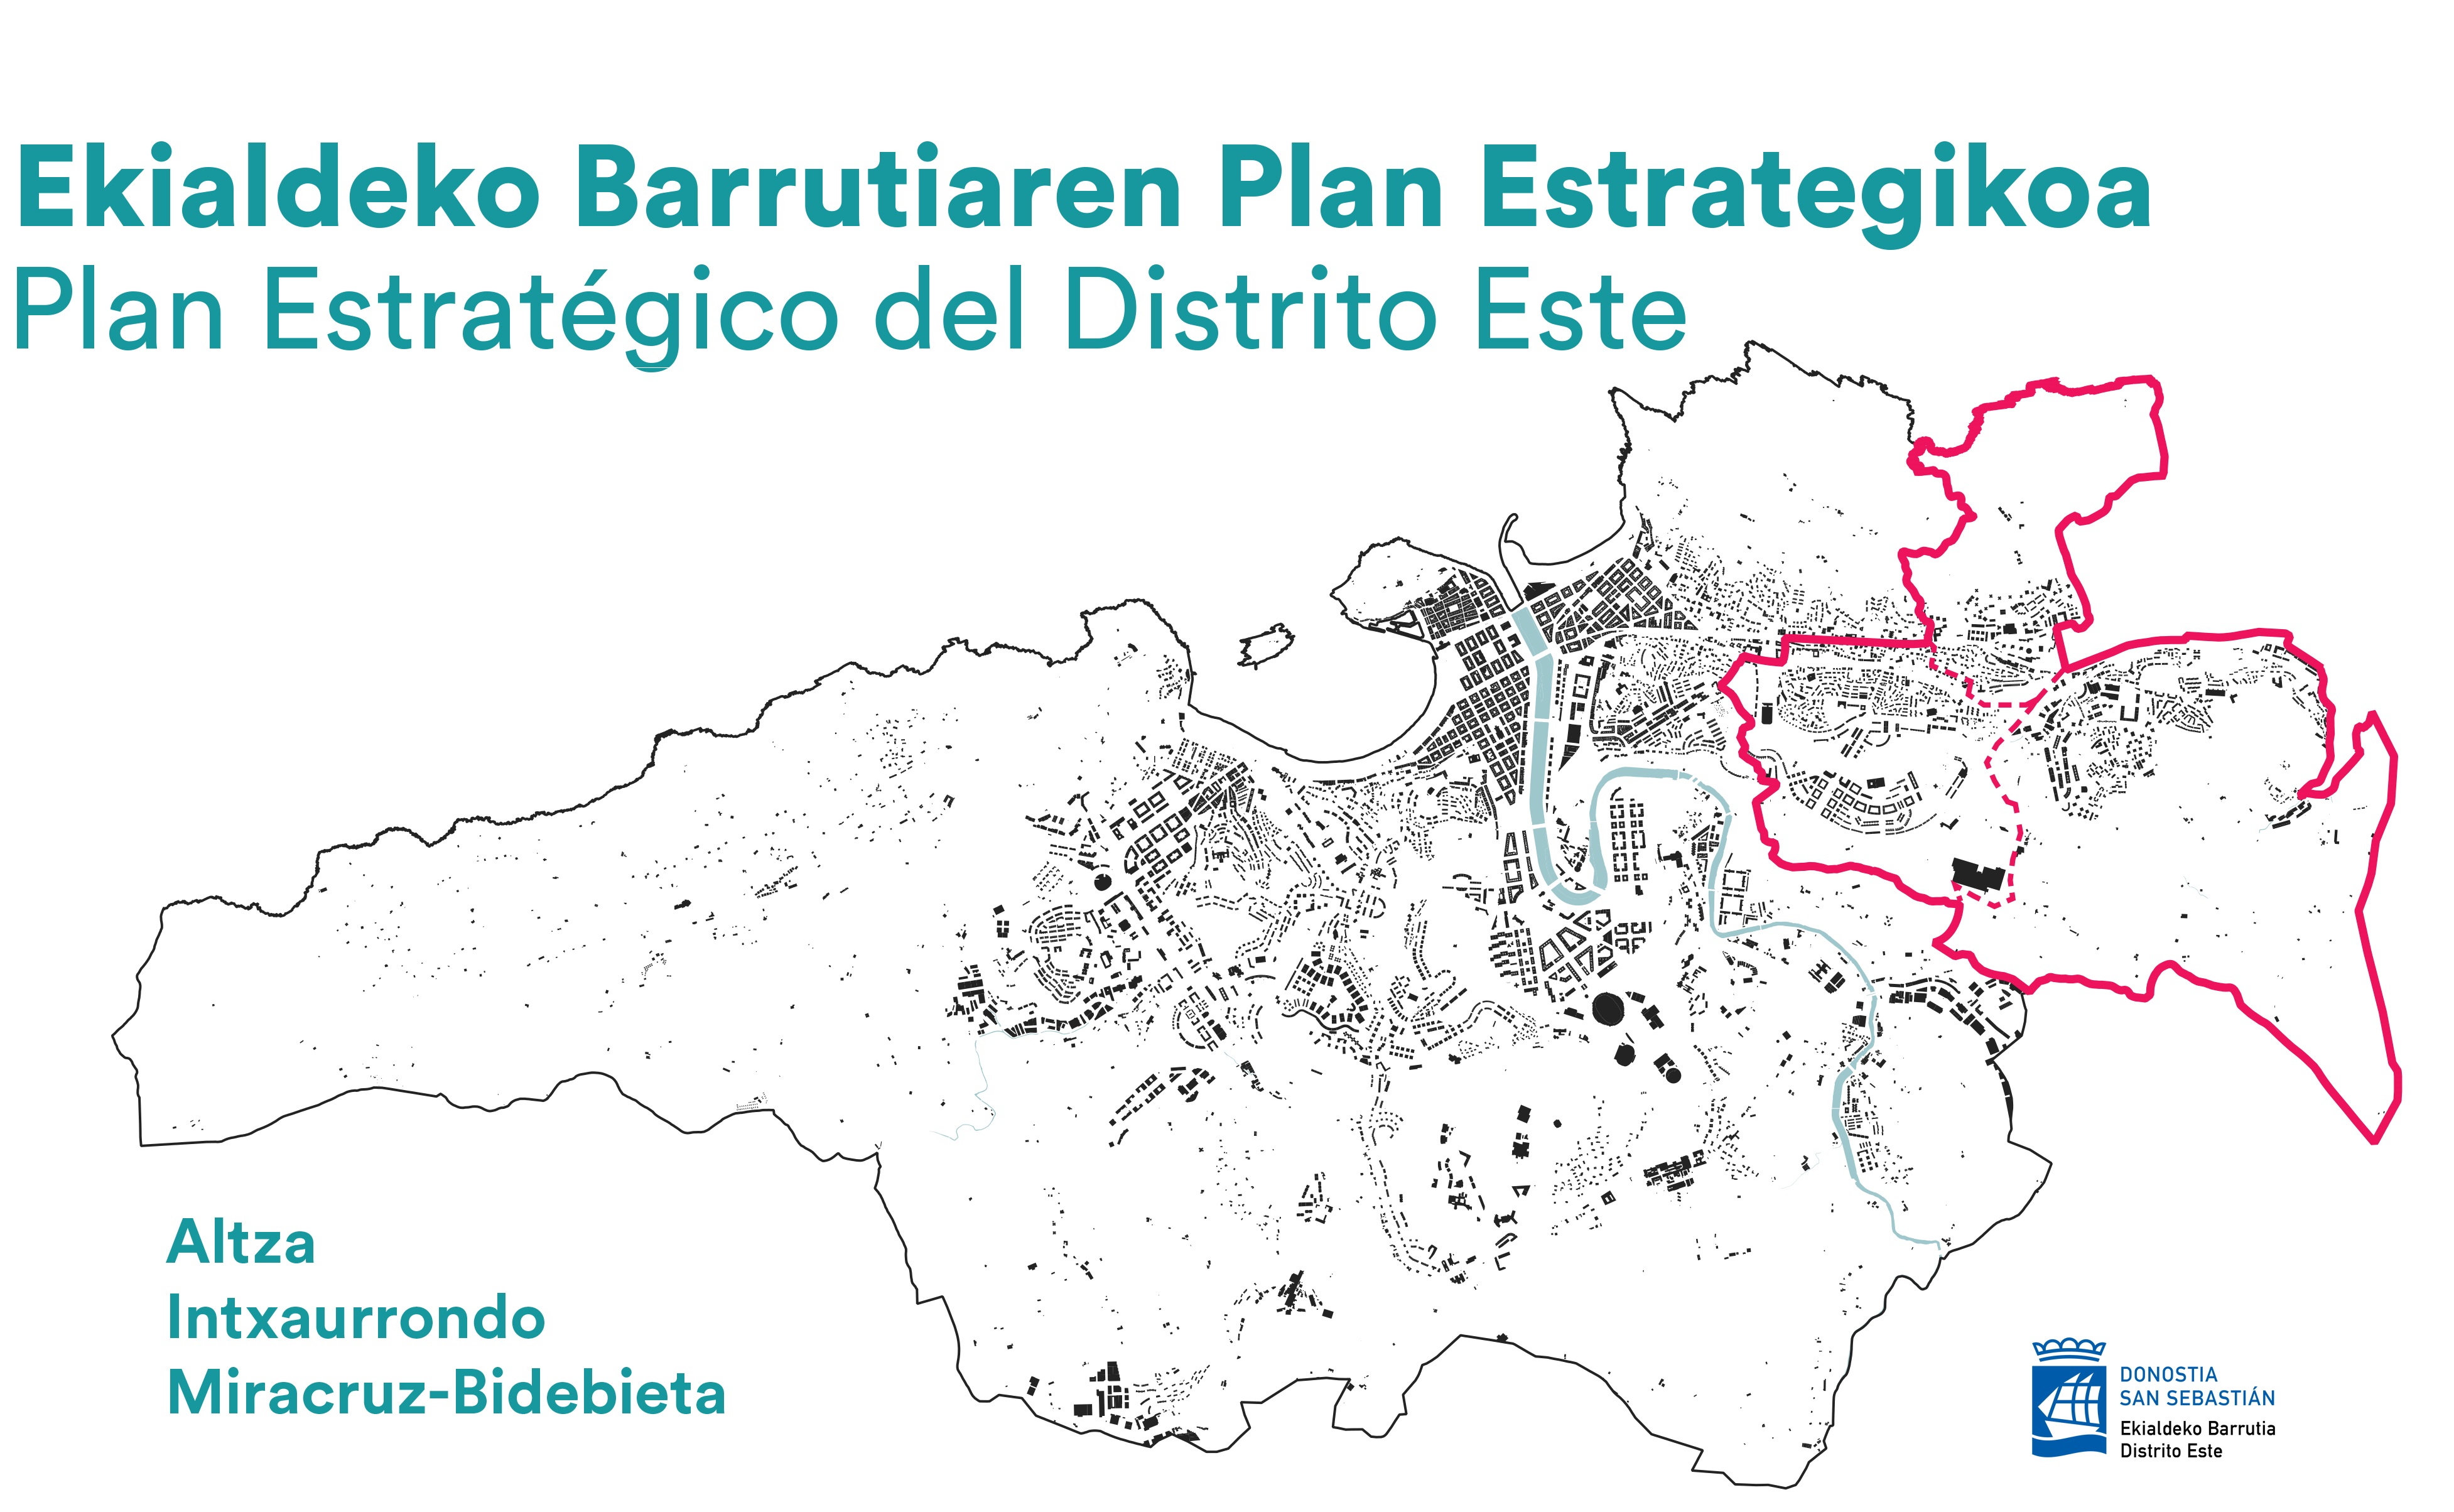 Ekialdeko Barrutiaren Plan Estrategikoa